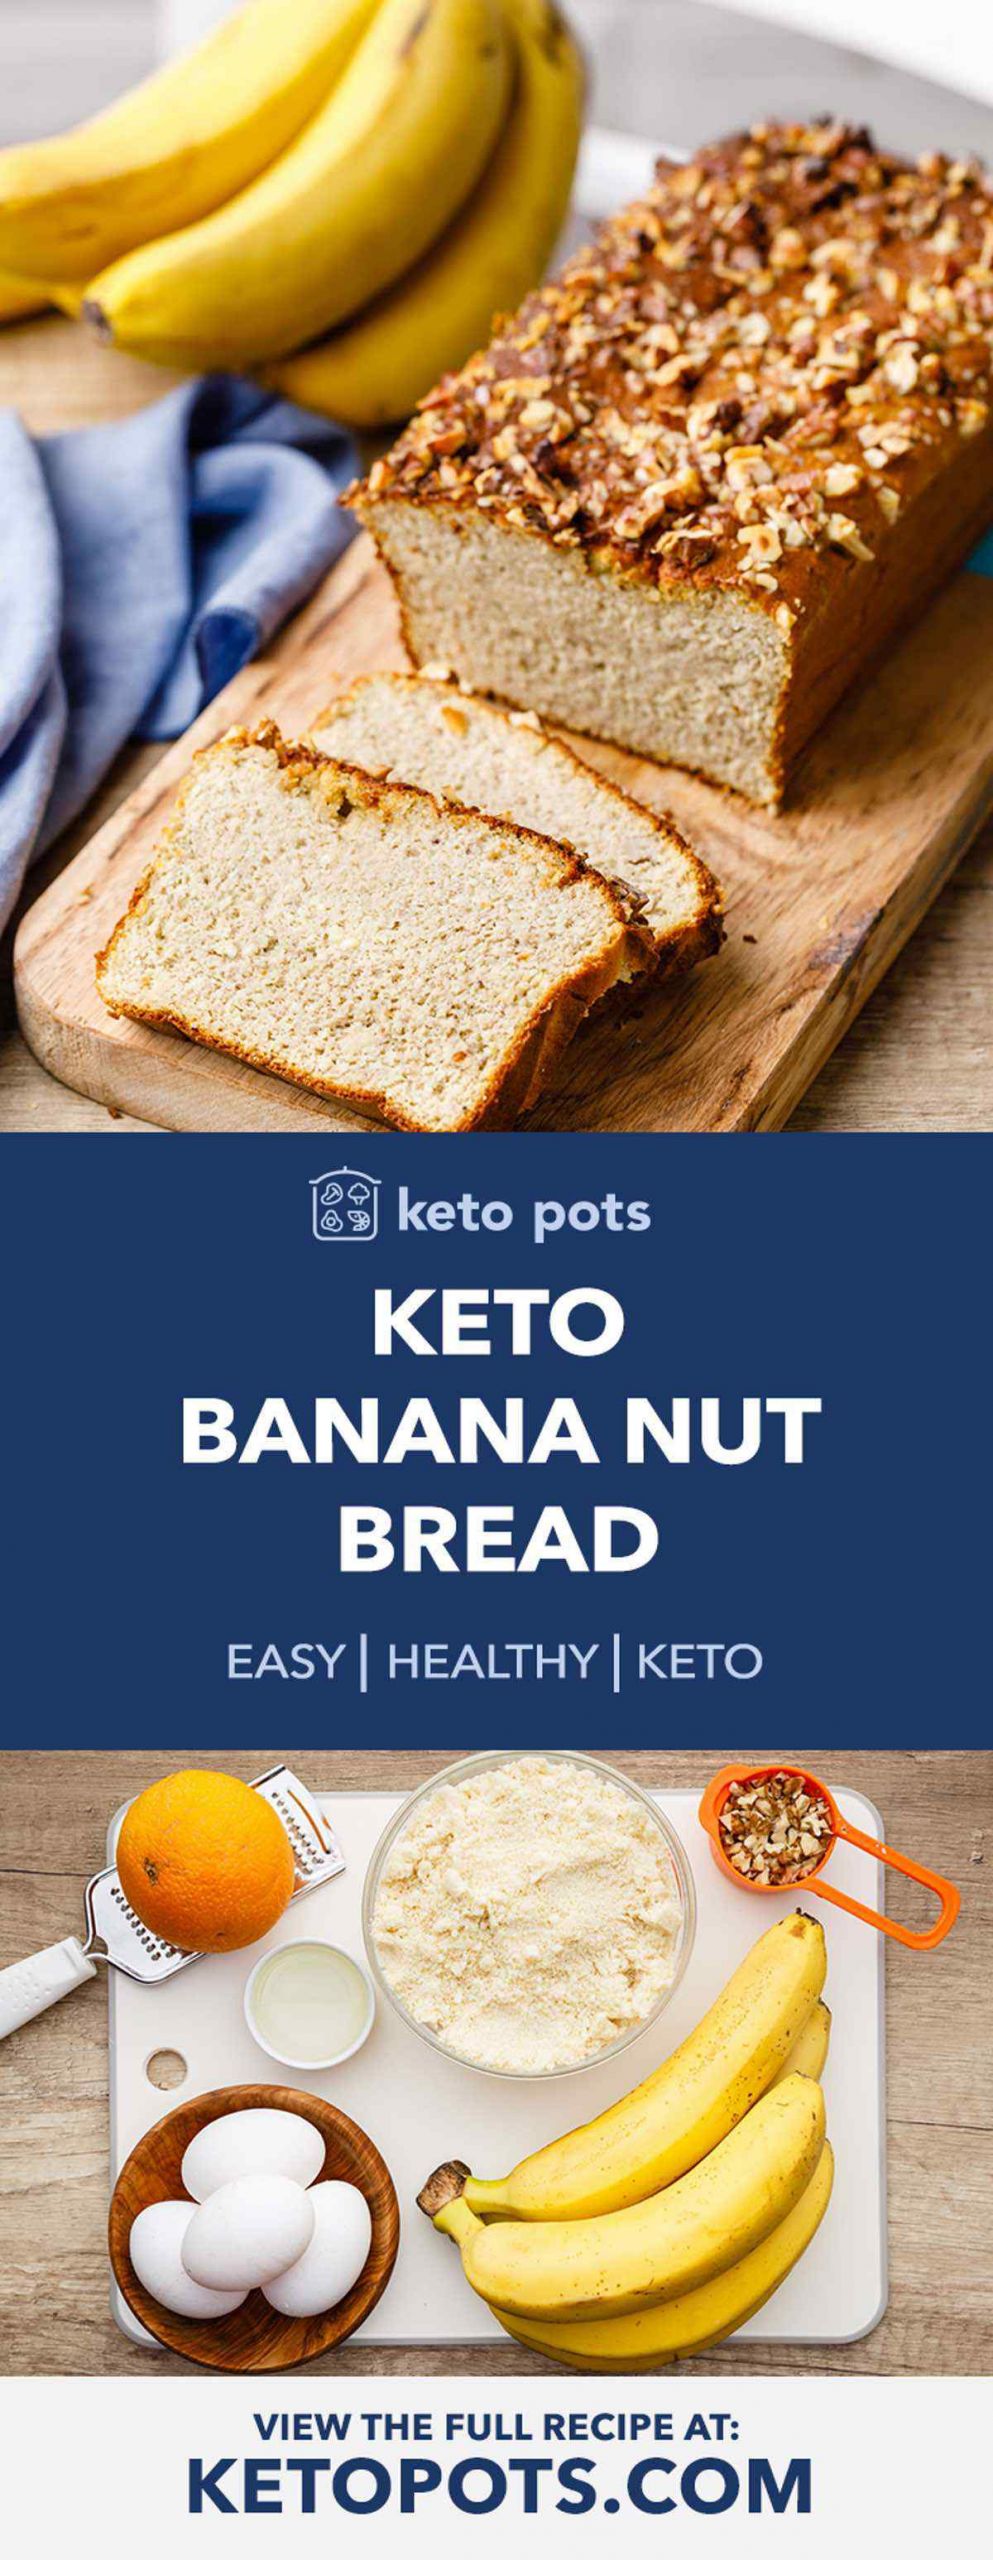 Banana Keto Recipes
 The Best Keto Banana Nut Bread Ever My Kids Love This